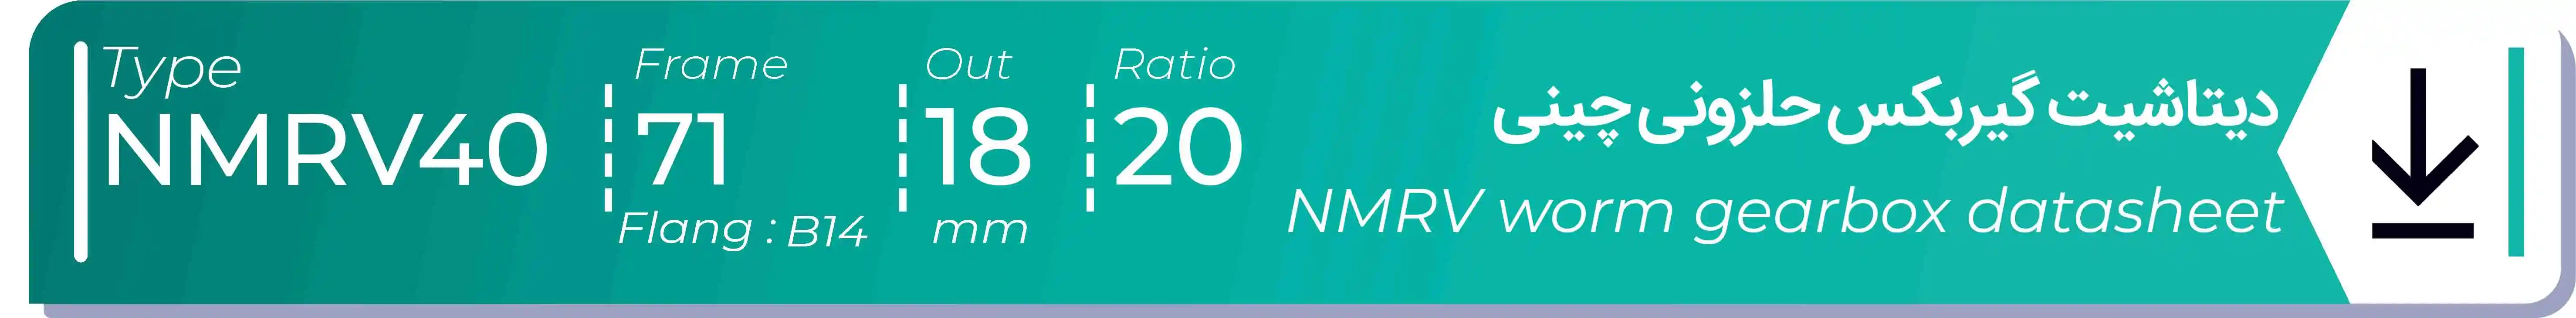  دیتاشیت و مشخصات فنی گیربکس حلزونی چینی   NMRV40  -  با خروجی 18- میلی متر و نسبت20 و فریم 71